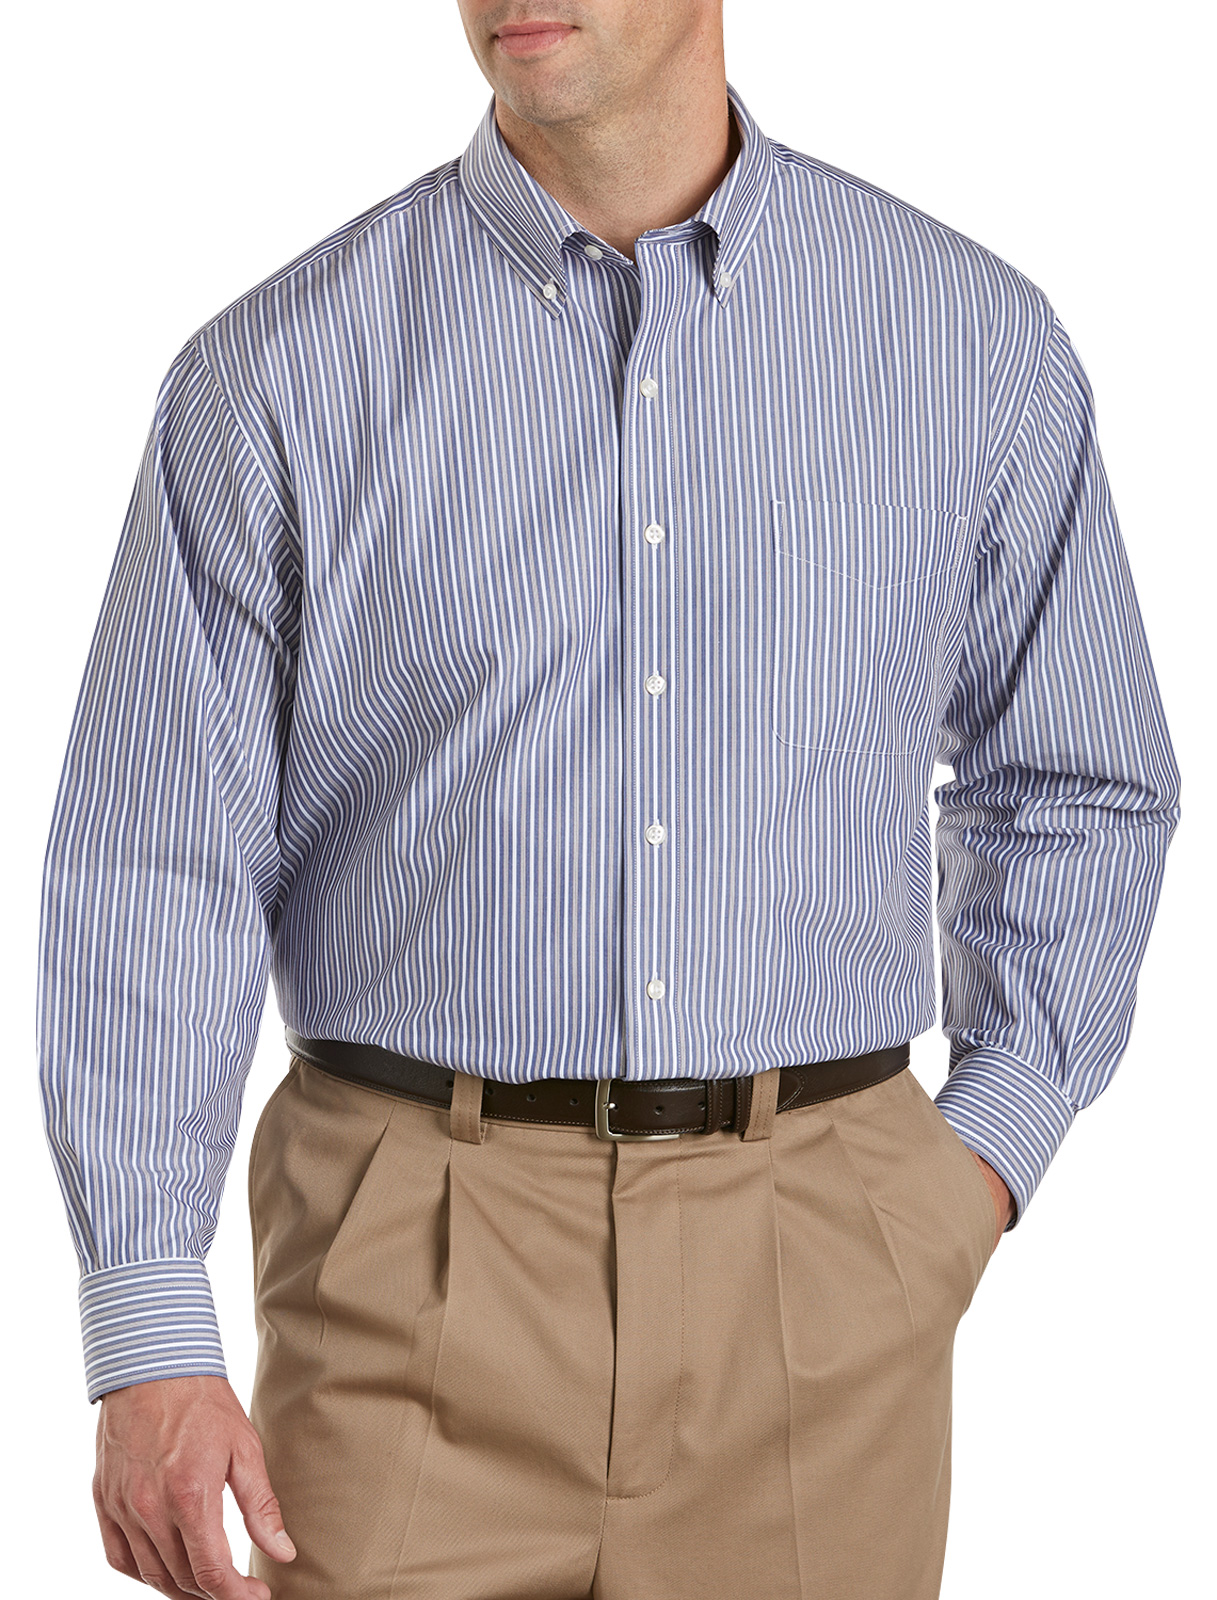 Oak Hill Men's Big and Tall Multi Stripe Sport Shirt